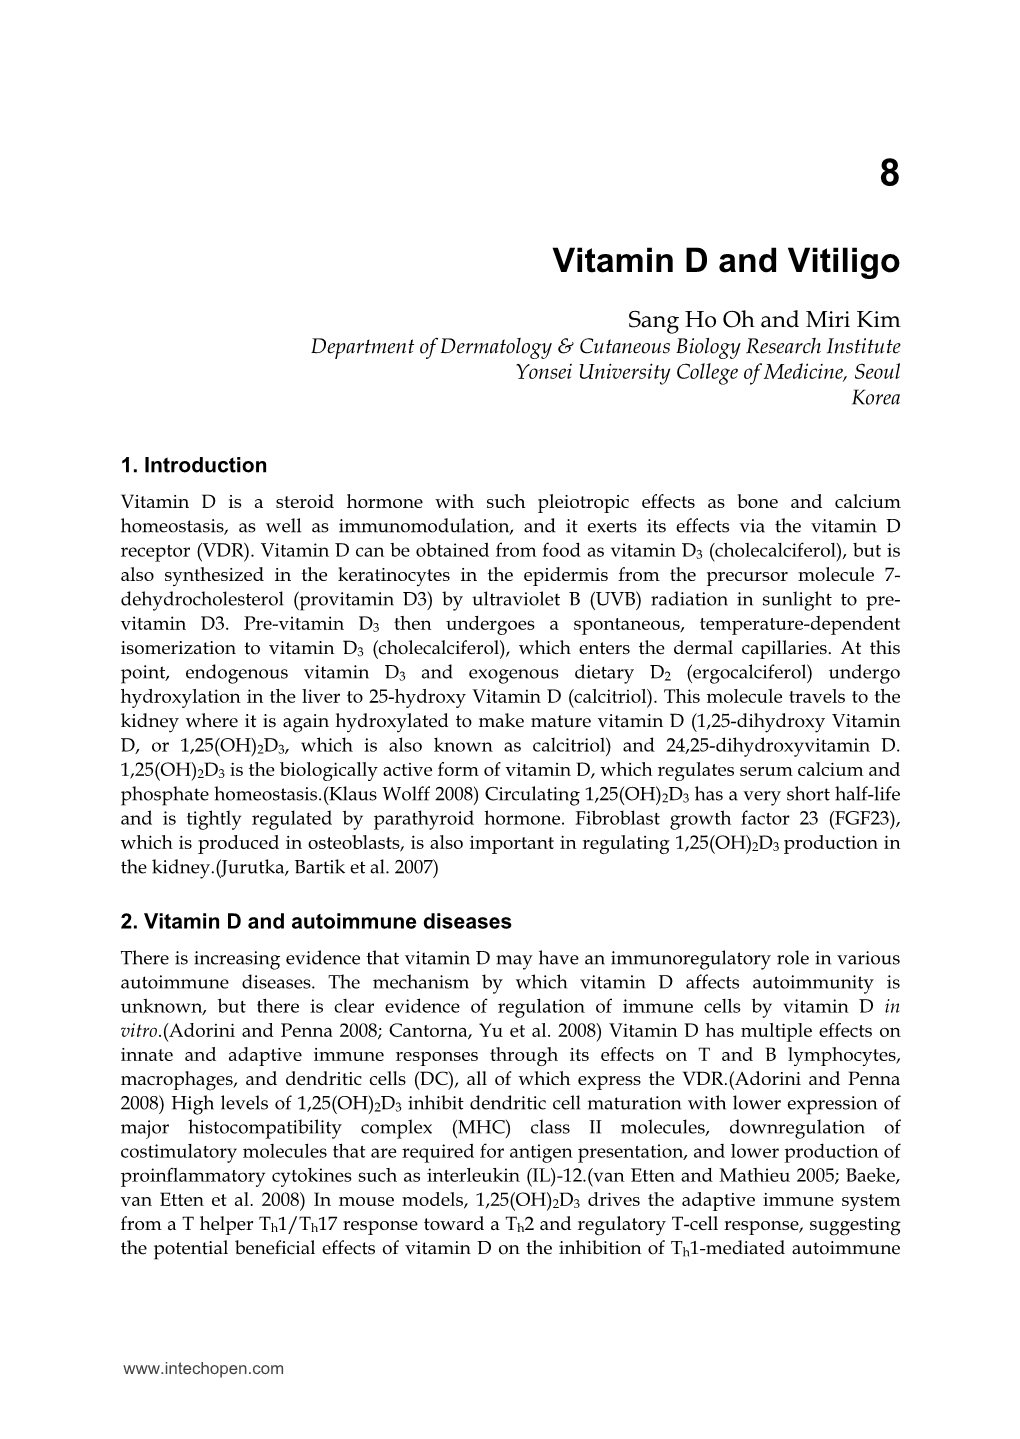 Vitamin D and Vitiligo